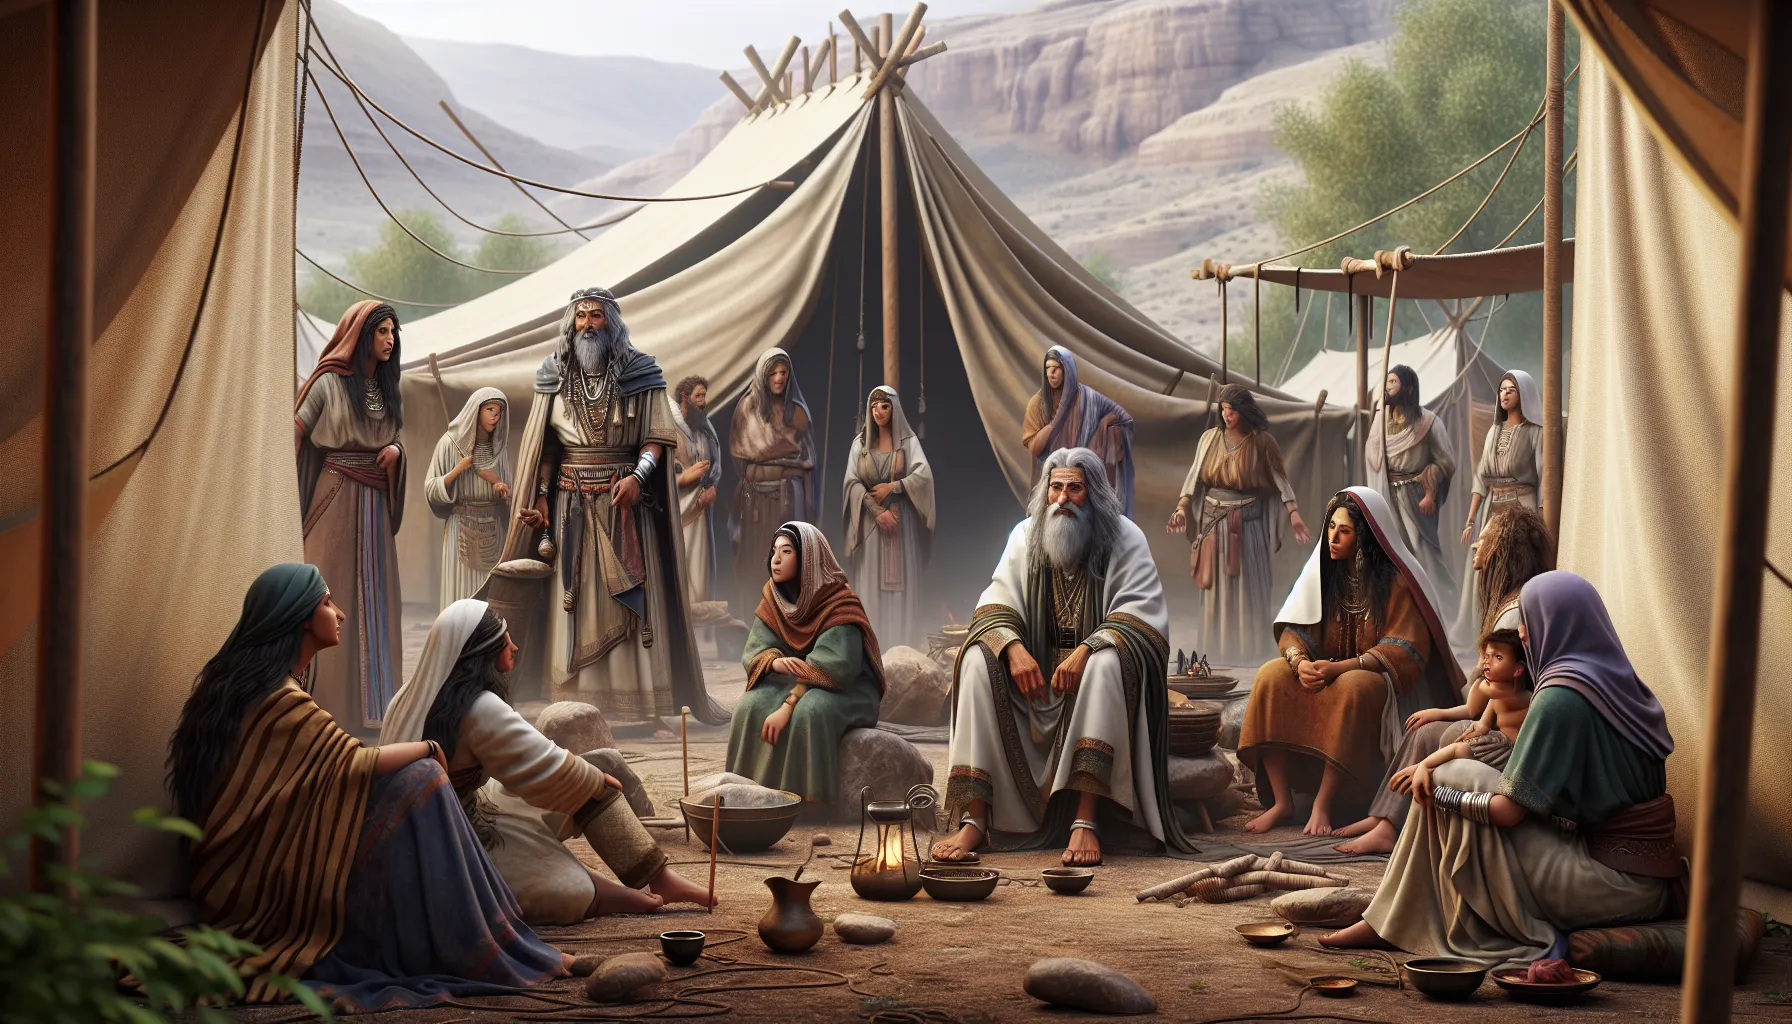 Imagen de una ilustración representativa de la poligamia en la historia bíblica.